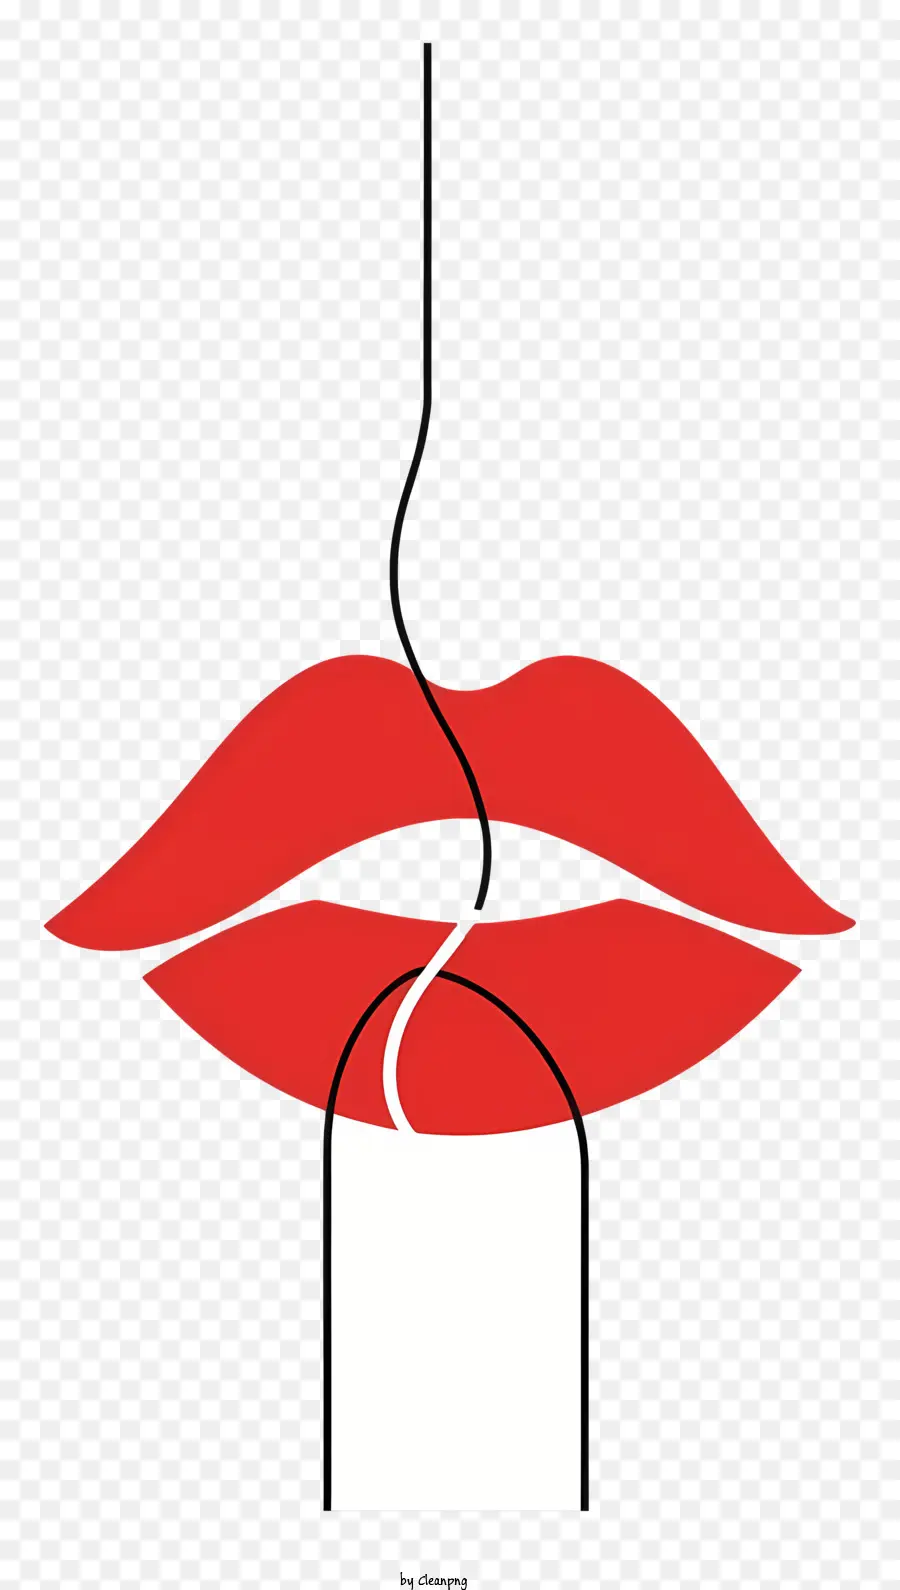 invito - Labbra seducenti della donna con rossetto rosso e tè